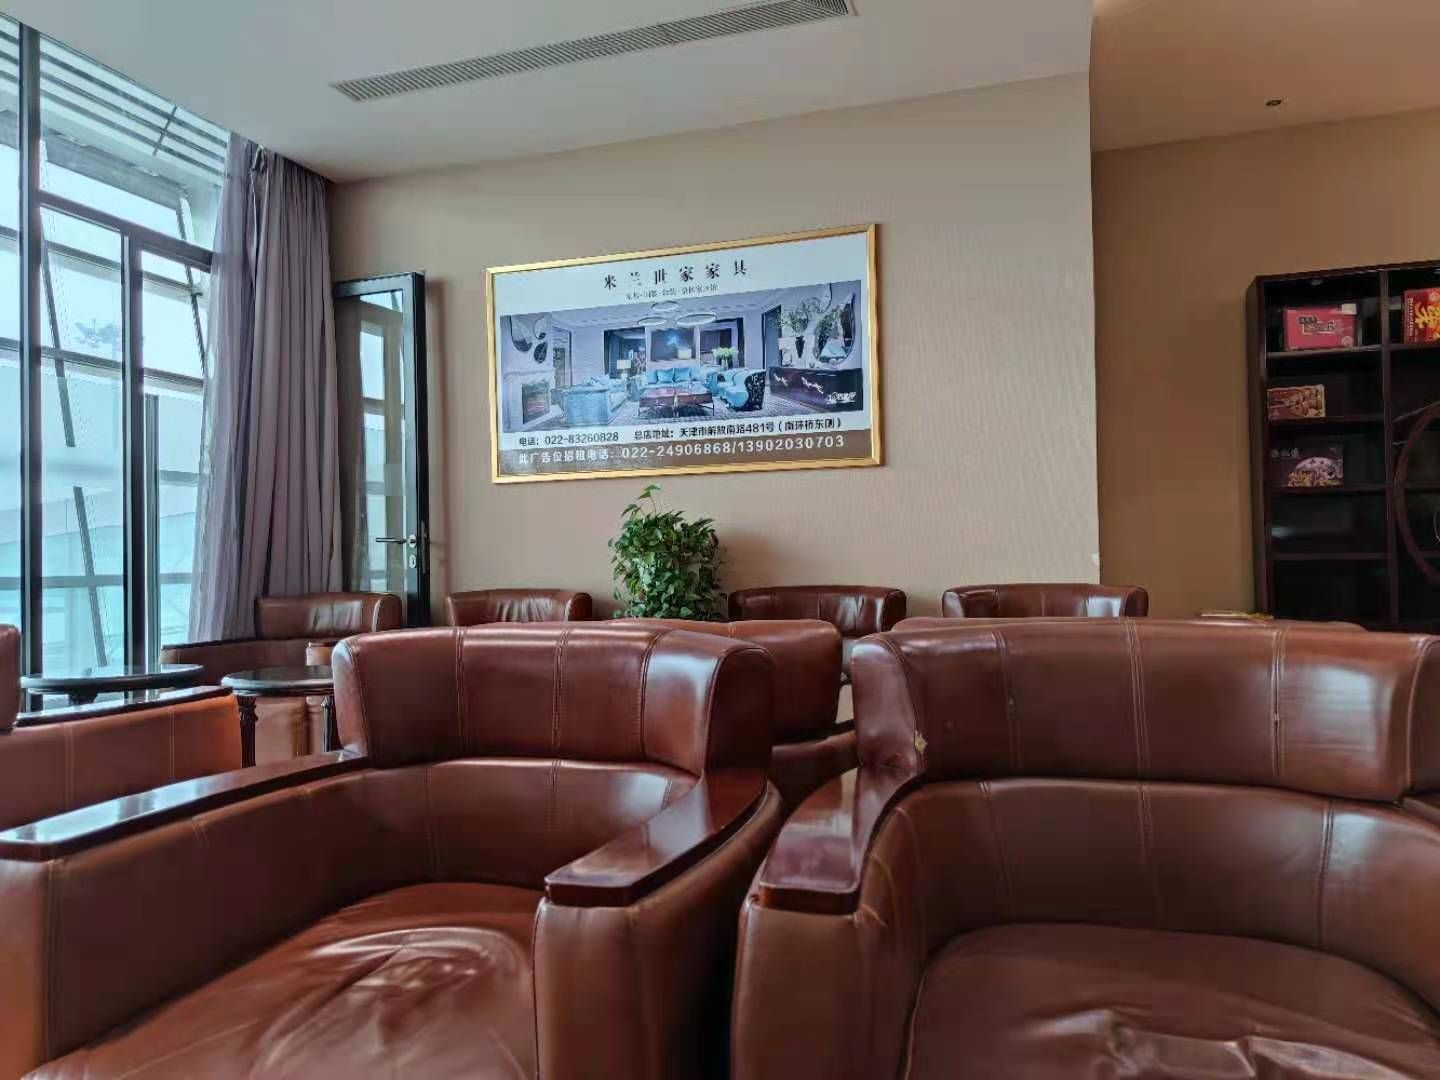 预定“天津滨海国际机场贵宾室服务”，带给你全程VIP专属服务! - 哔哩哔哩